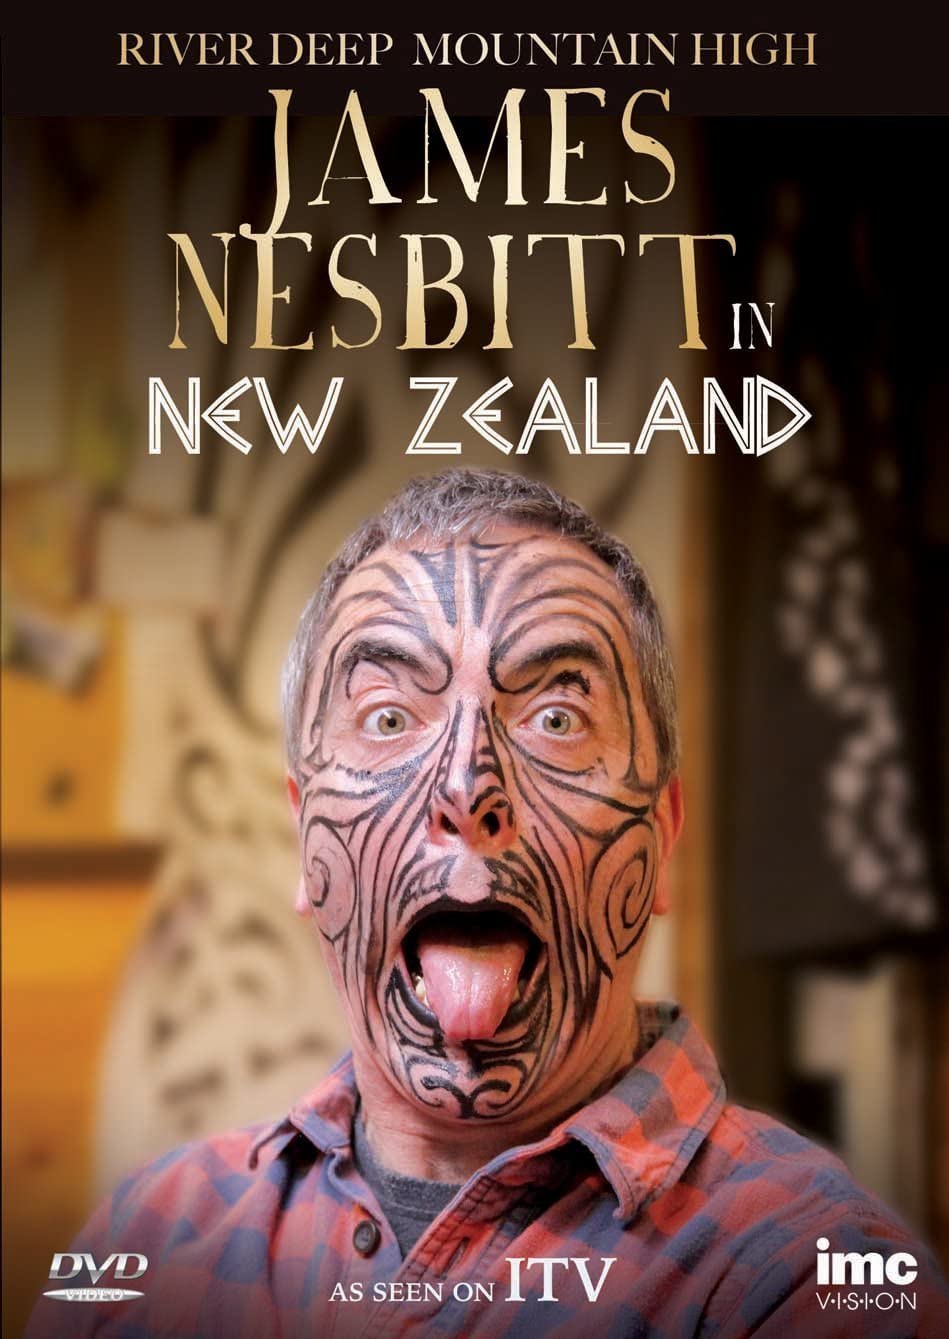 River Deep Mountain High - James Nesbitt In New Zealand - As seen on ITV1 - Comedy [DVD]